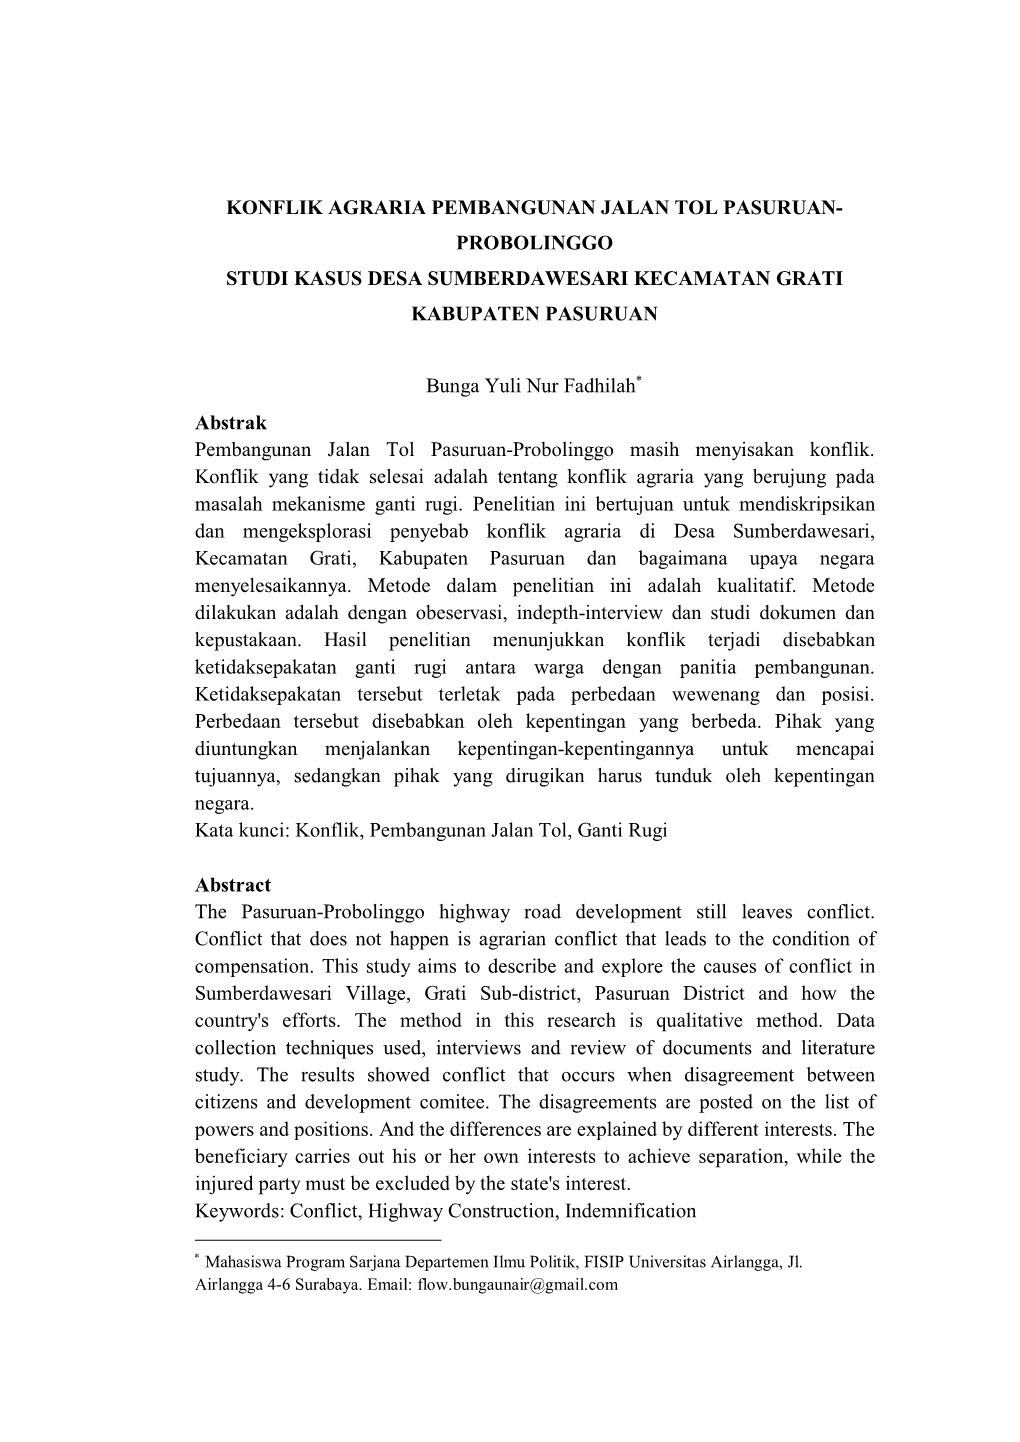 Konflik Agraria Pembangunan Jalan Tol Pasuruan- Probolinggo Studi Kasus Desa Sumberdawesari Kecamatan Grati Kabupaten Pasuruan